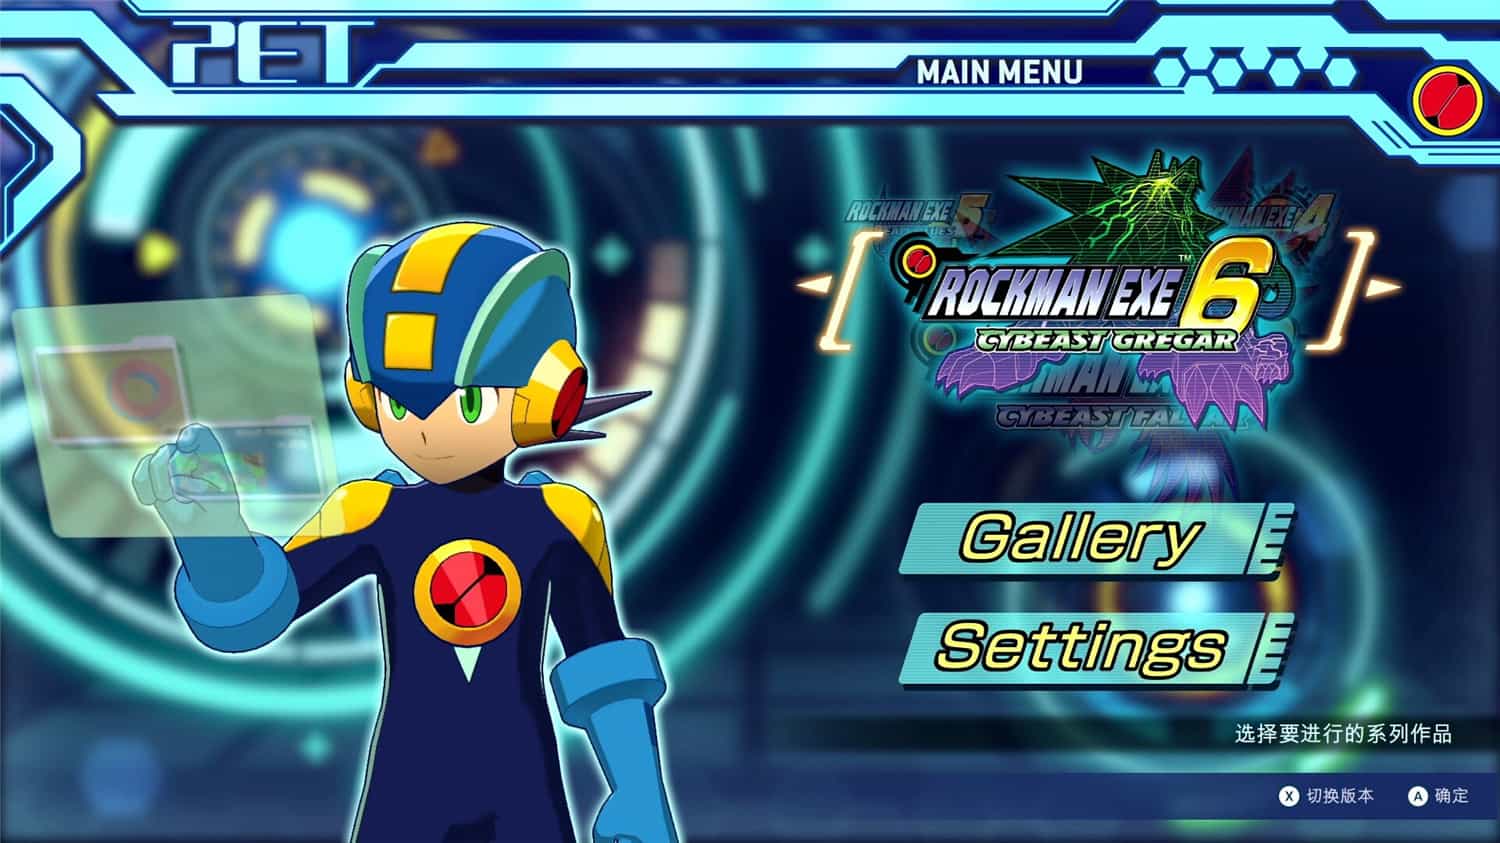 《洛克人EXE合集2/Mega Man Battle Network Legacy Collection Vol 2》免安装中文版|迅雷百度云下载